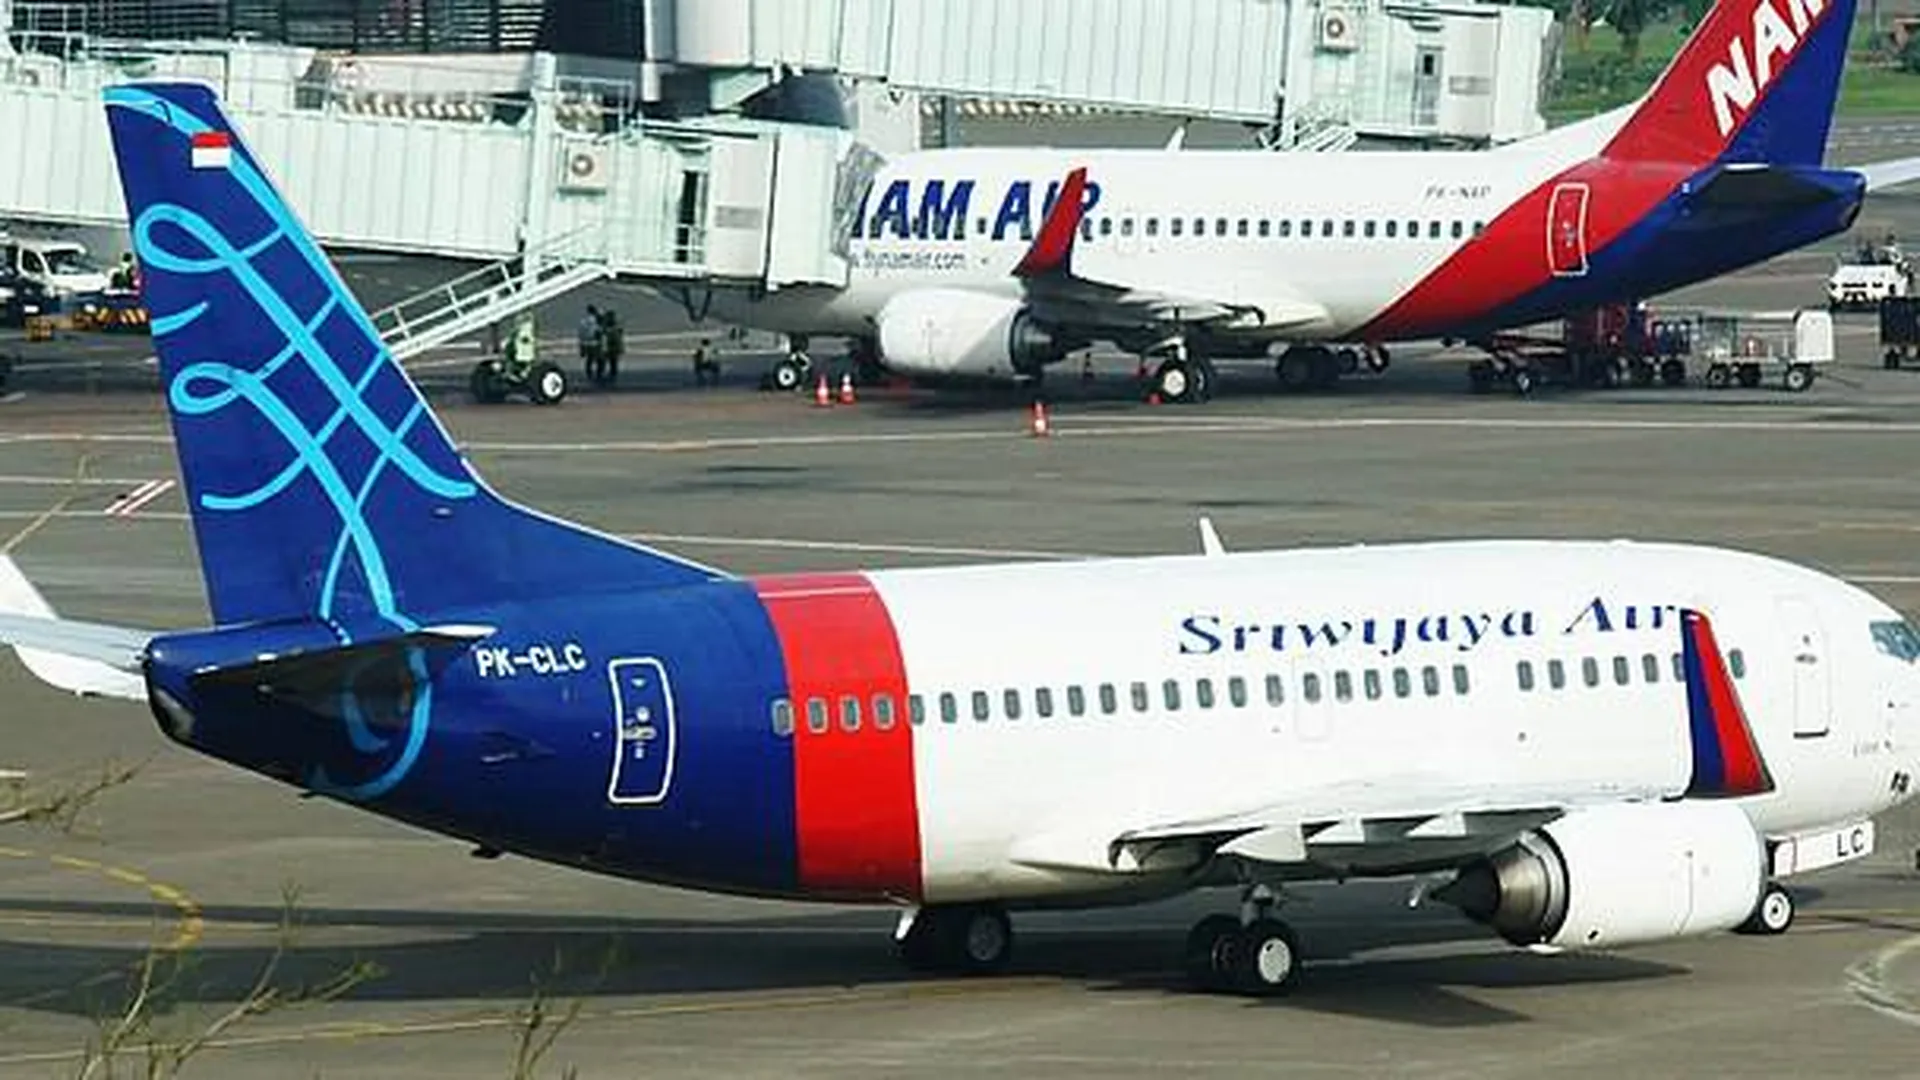 Речевой самописец Boeing 737 обнаружили в Индонезии спустя почти 3 месяца после авиакатастрофы